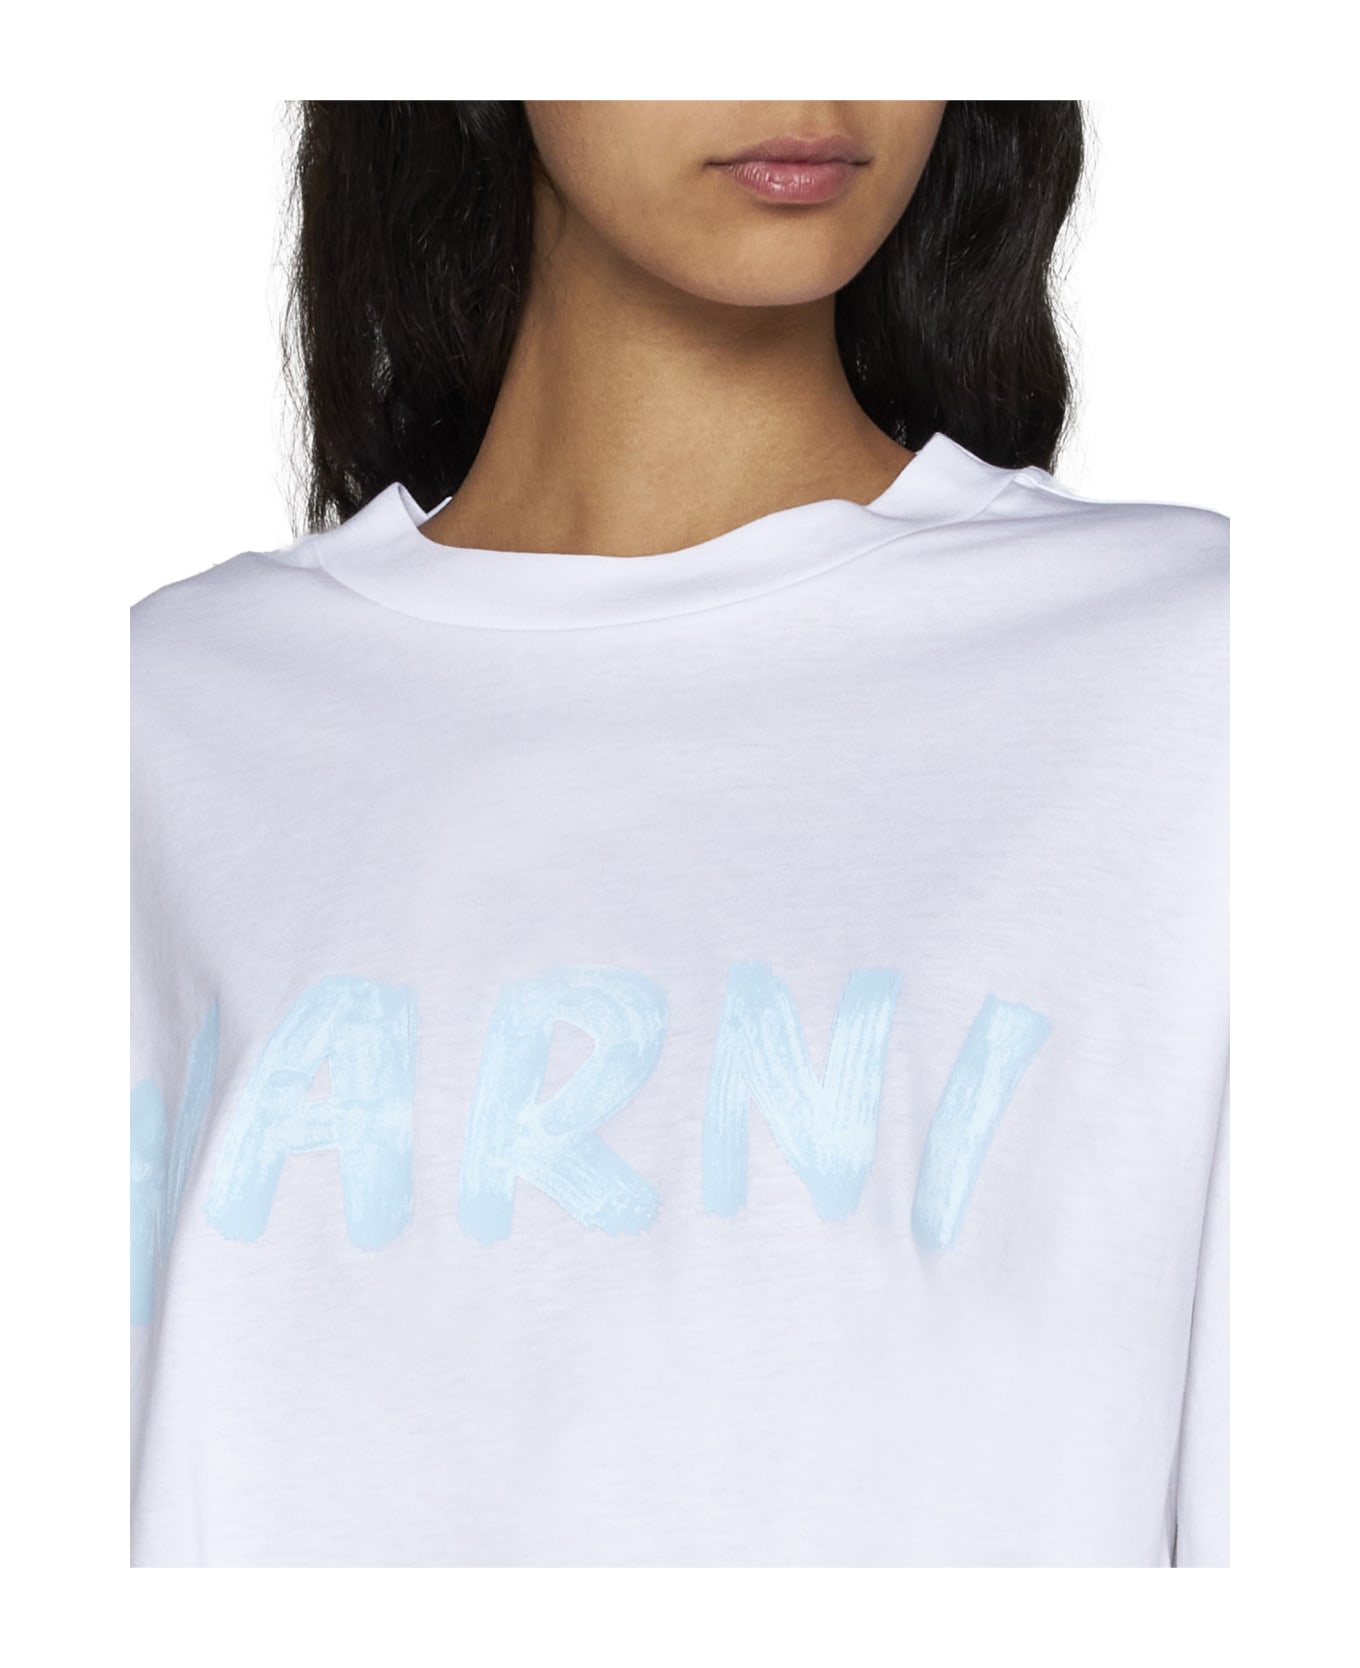 Marni T-Shirt - Lily white